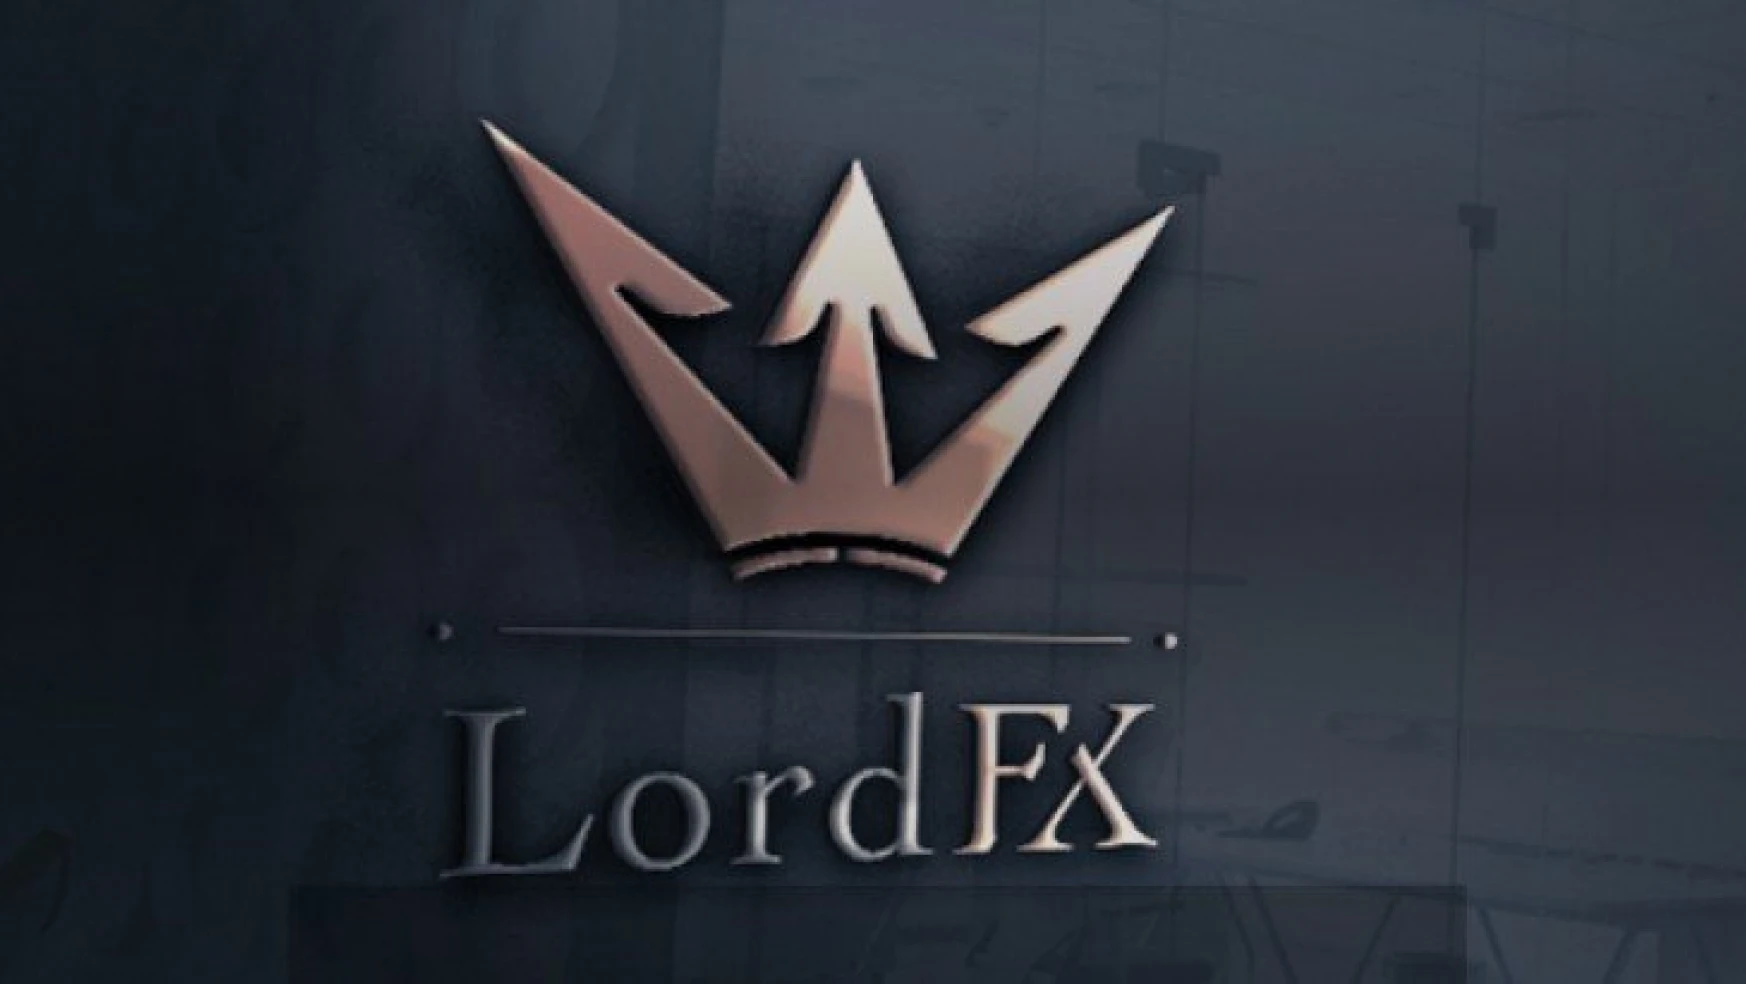 Lord Fx ile İlgili Merak Edilen Tüm Detaylar